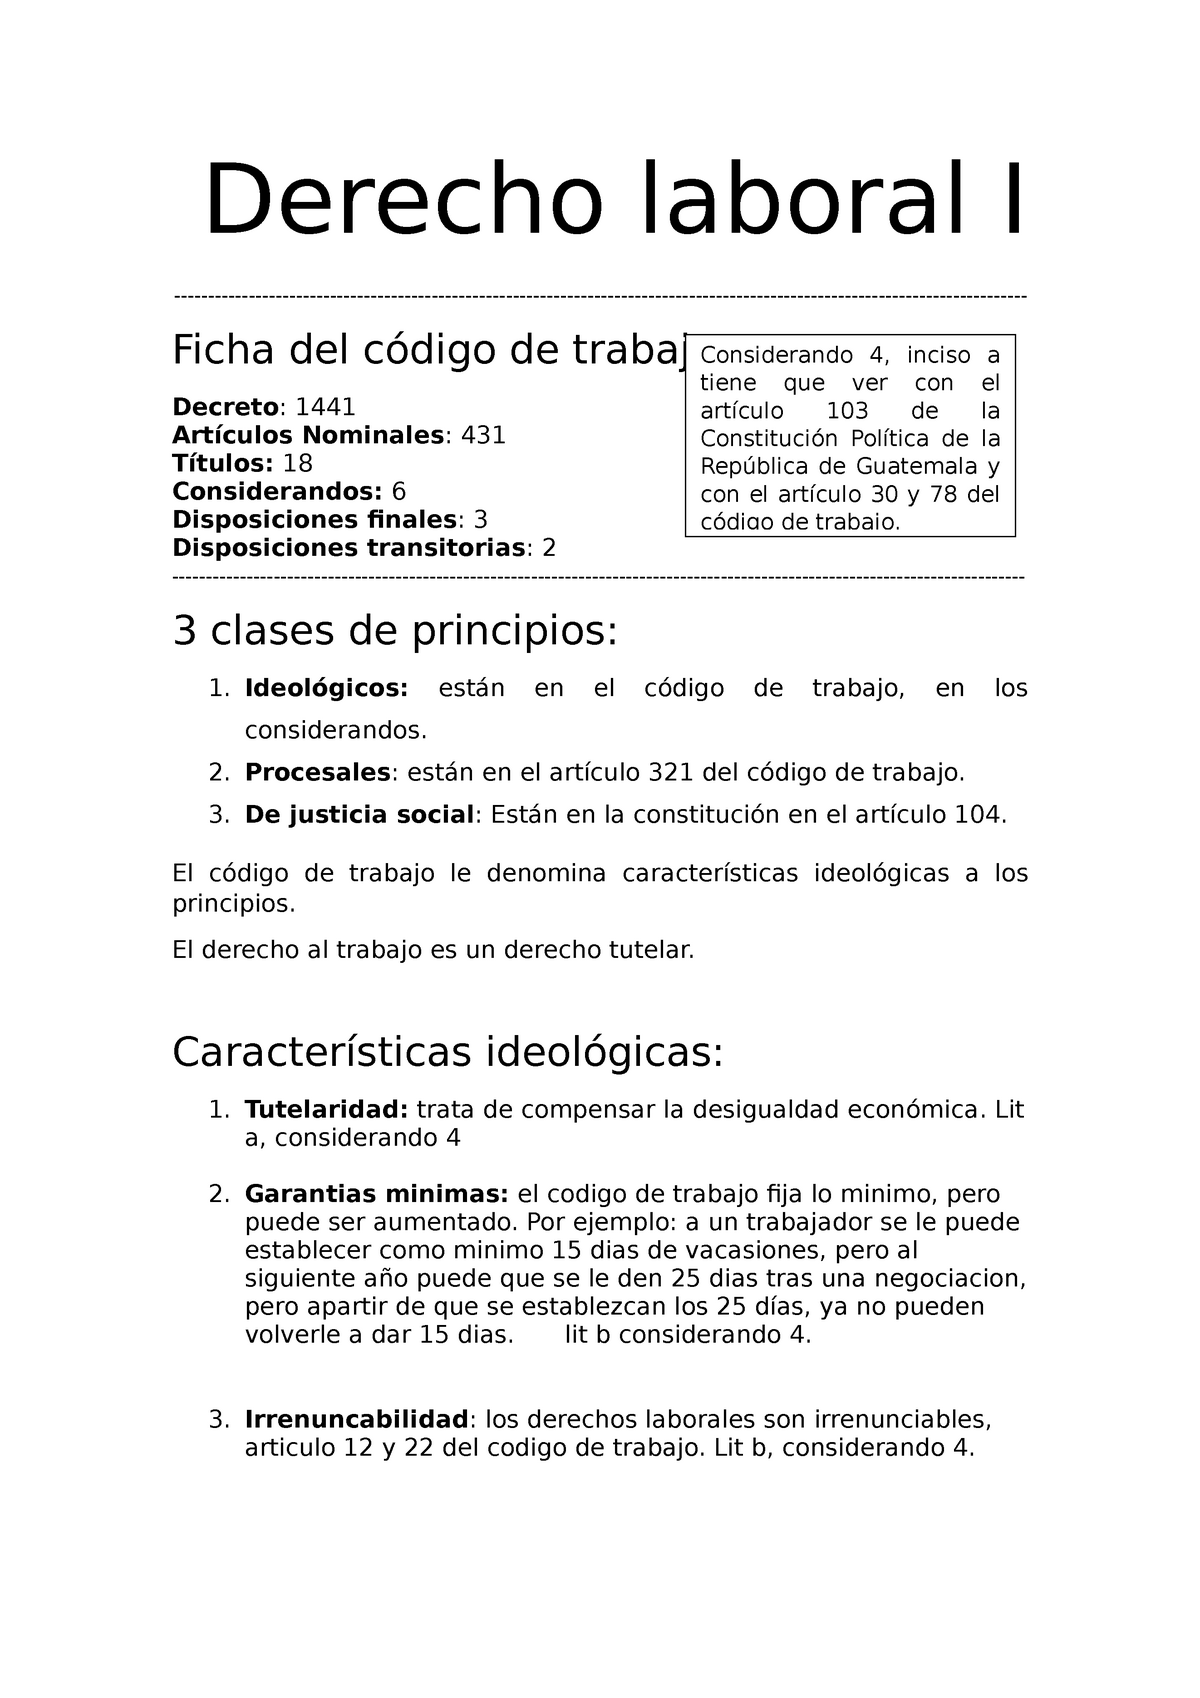 Ondas Normal Mantenimiento Derecho Laboral: Código De Trabajo Y Constitución Política De La República  De Guatemala. - Derecho - Studocu